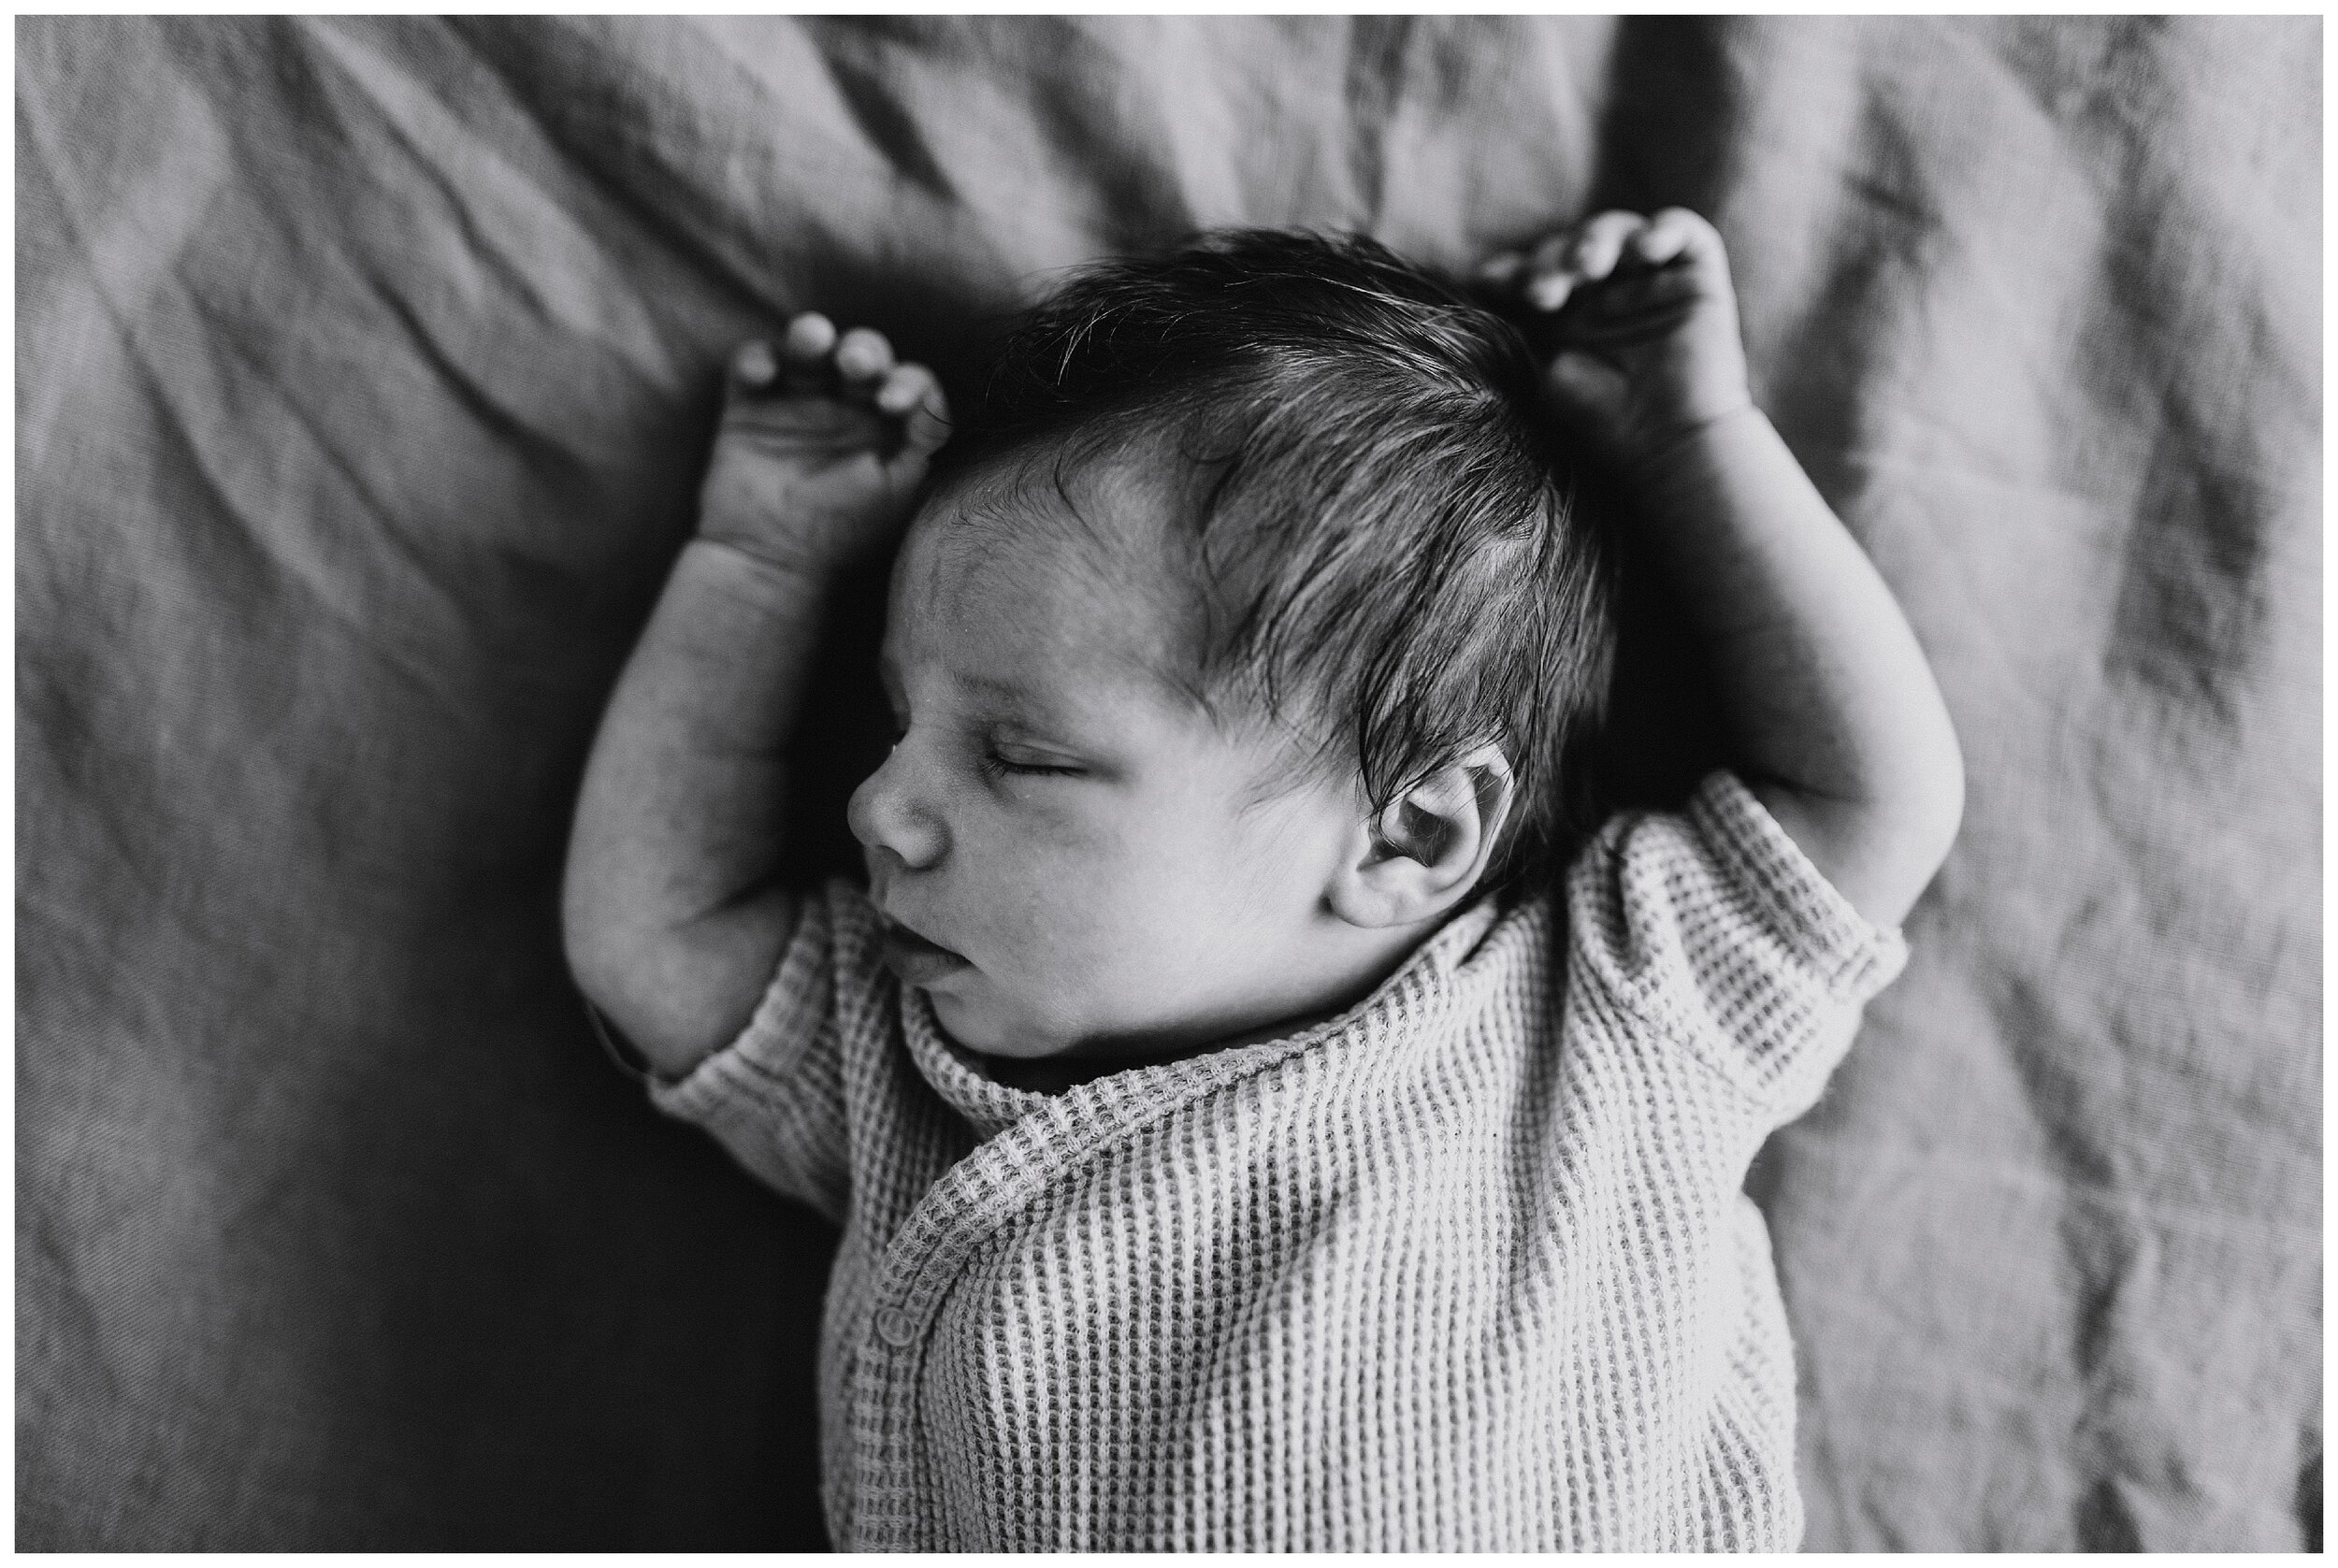 newbornfotografie-newbornfotograaf-babyfotografie-babyfotoshoot-newbornshoot-lifestylenewborn-lisa-helsen-photography-herentals-westerlo-vlaanderen_0009.jpg